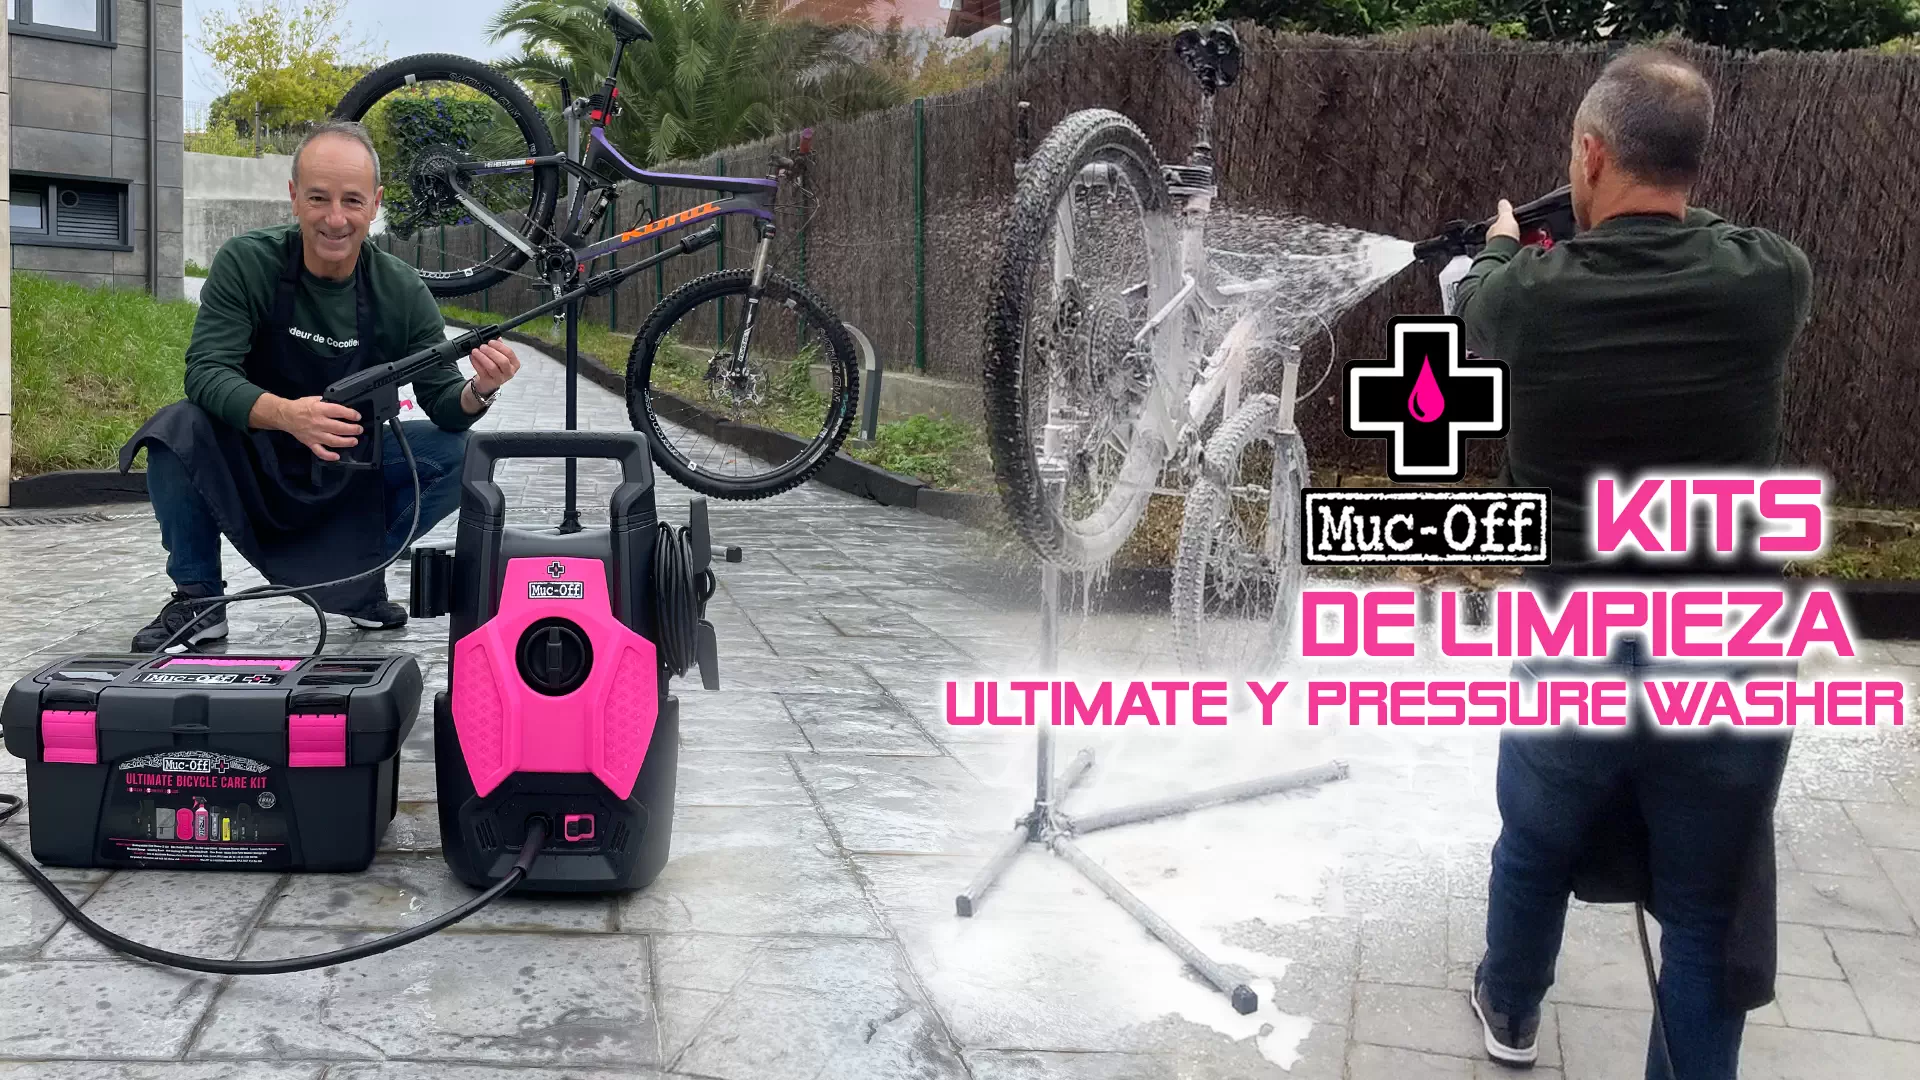 Kits Ultimate y Pressure Washer de Muc-off para la limpieza de tu bici